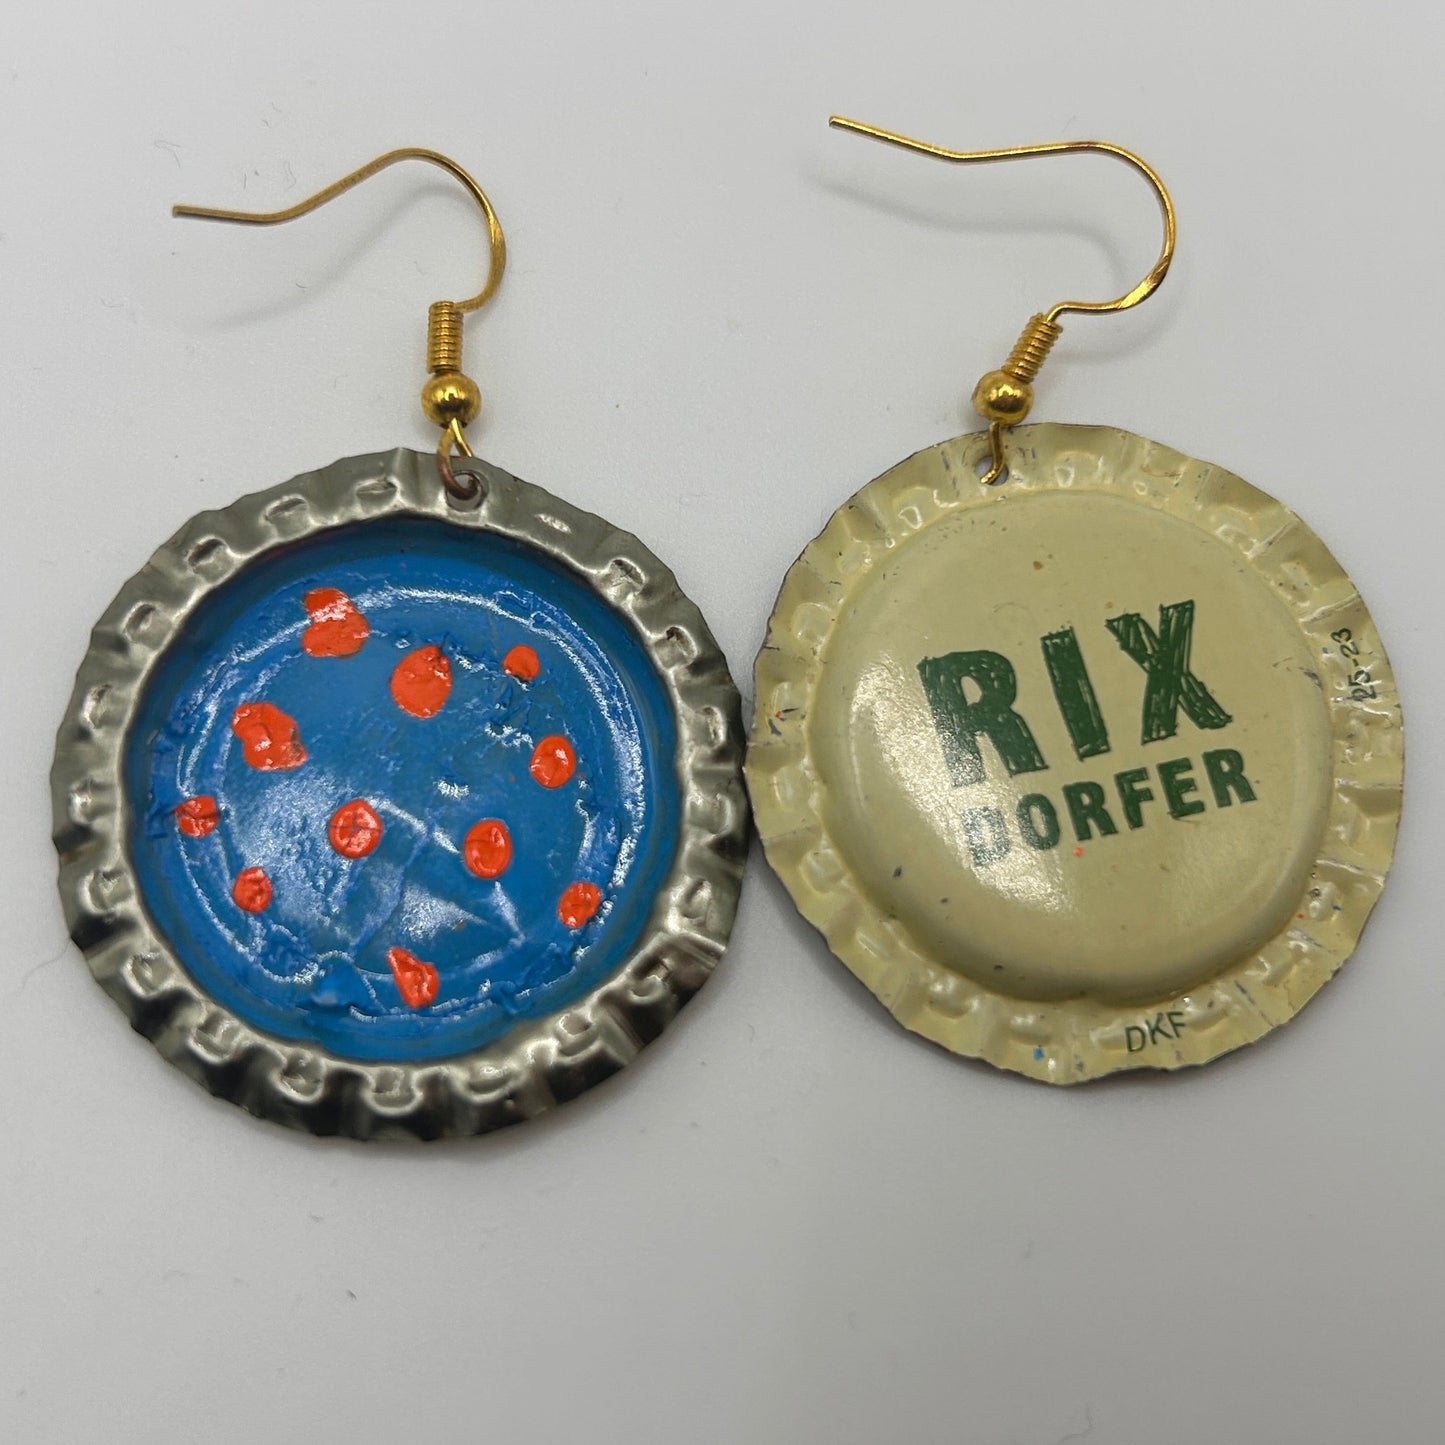 Rix Dorfer earring